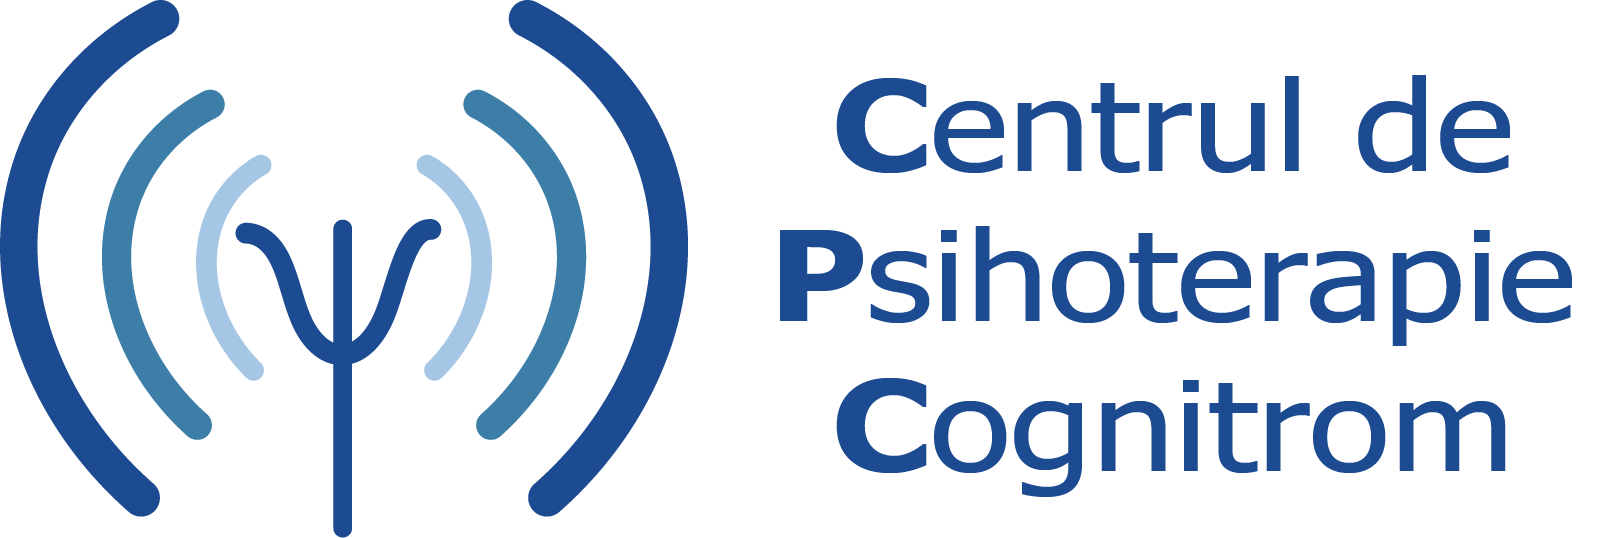 Centrul de psihoterapie Cognitrom - CPC - sigla